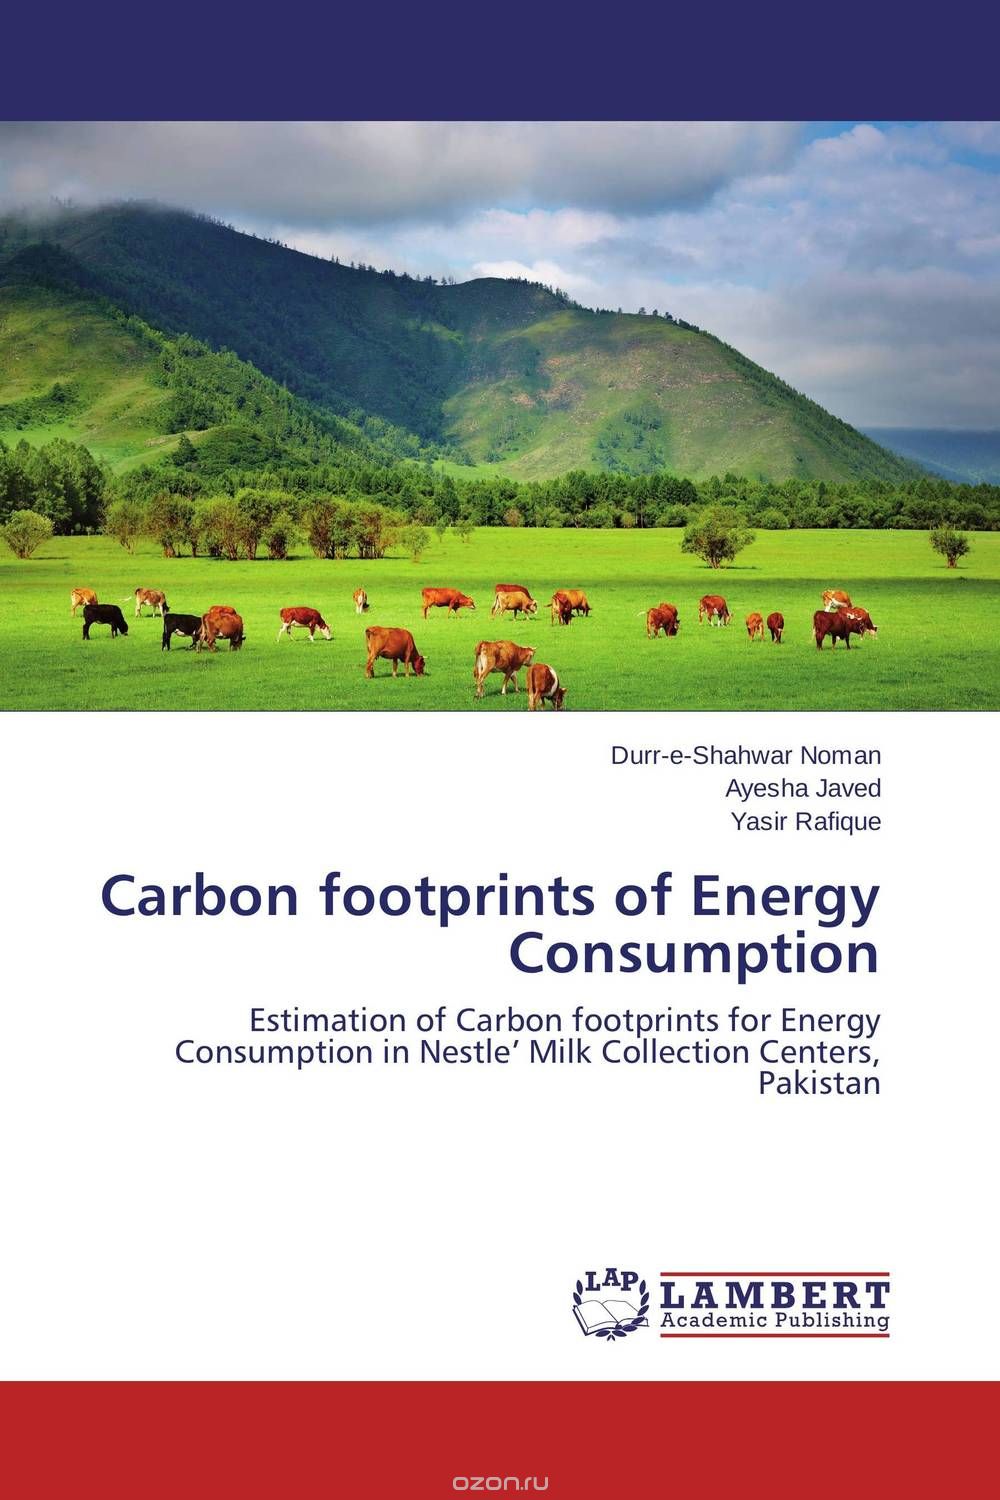 Скачать книгу "Carbon footprints of Energy Consumption"